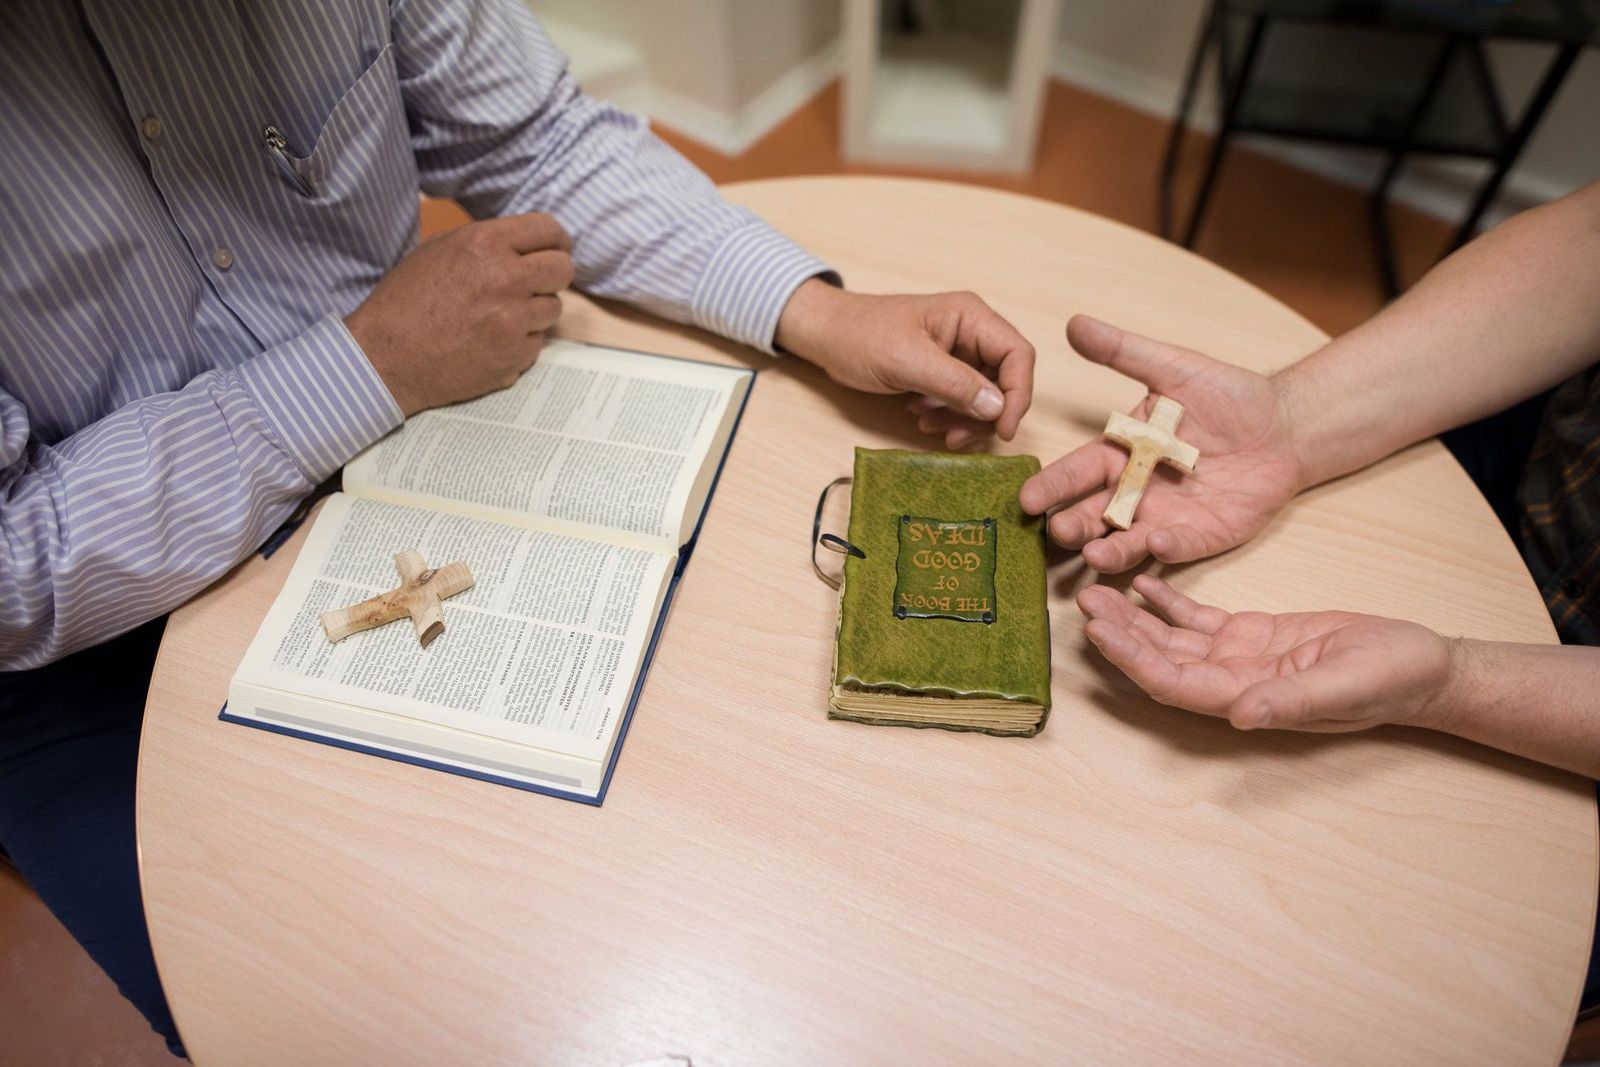 Der Bildausschnitt zeigt zwei Personen an einem Tisch mit aufgeschlagener Bibel und kleinen Holzkreuzen